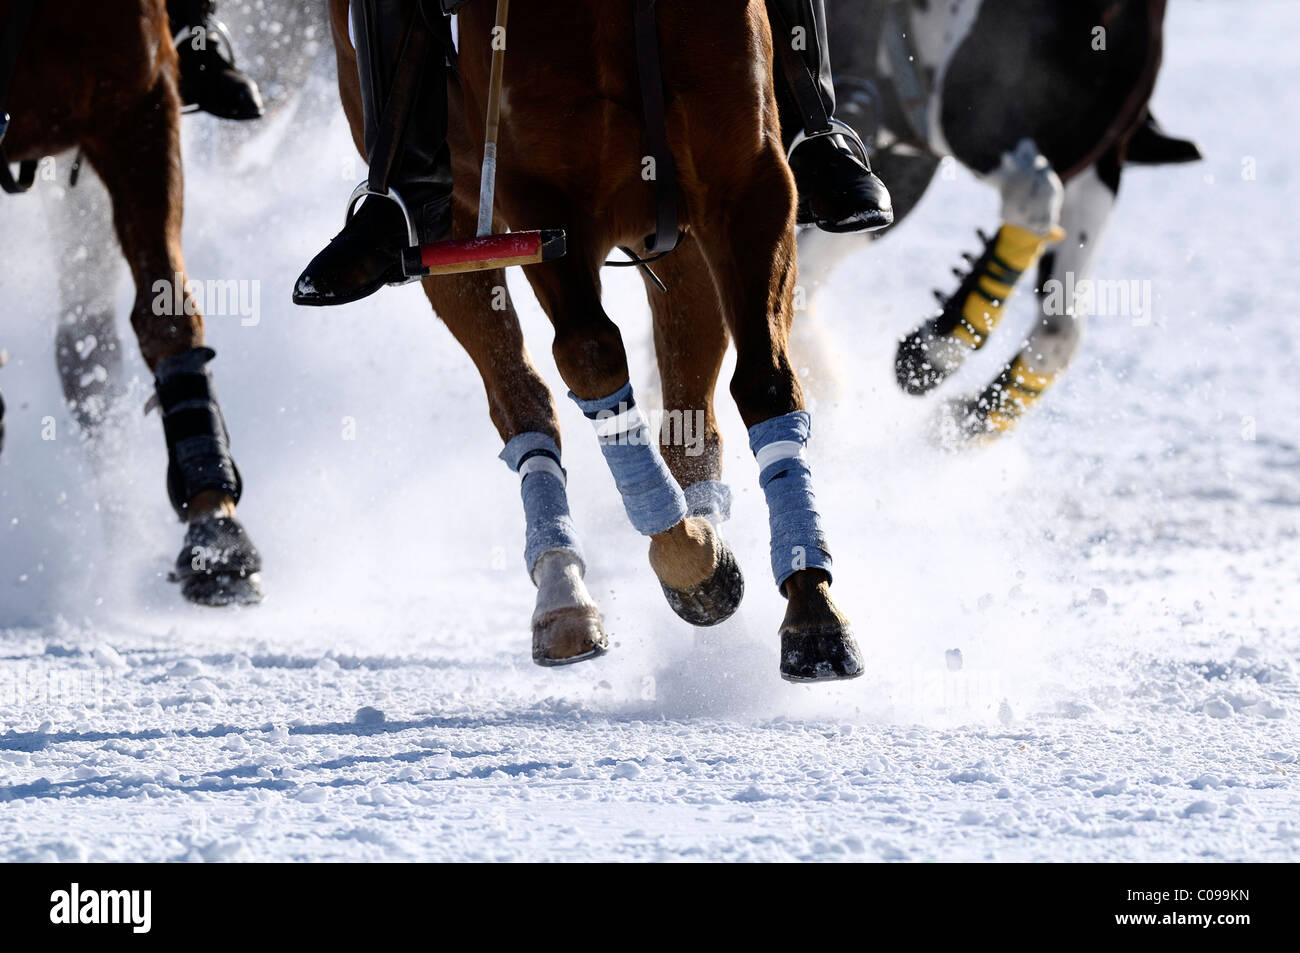 Giocatori di polo in lotta per la sfera, polo cavalli al galoppo attraverso la neve e neve Arena Polo World Cup 2010 torneo di polo Foto Stock